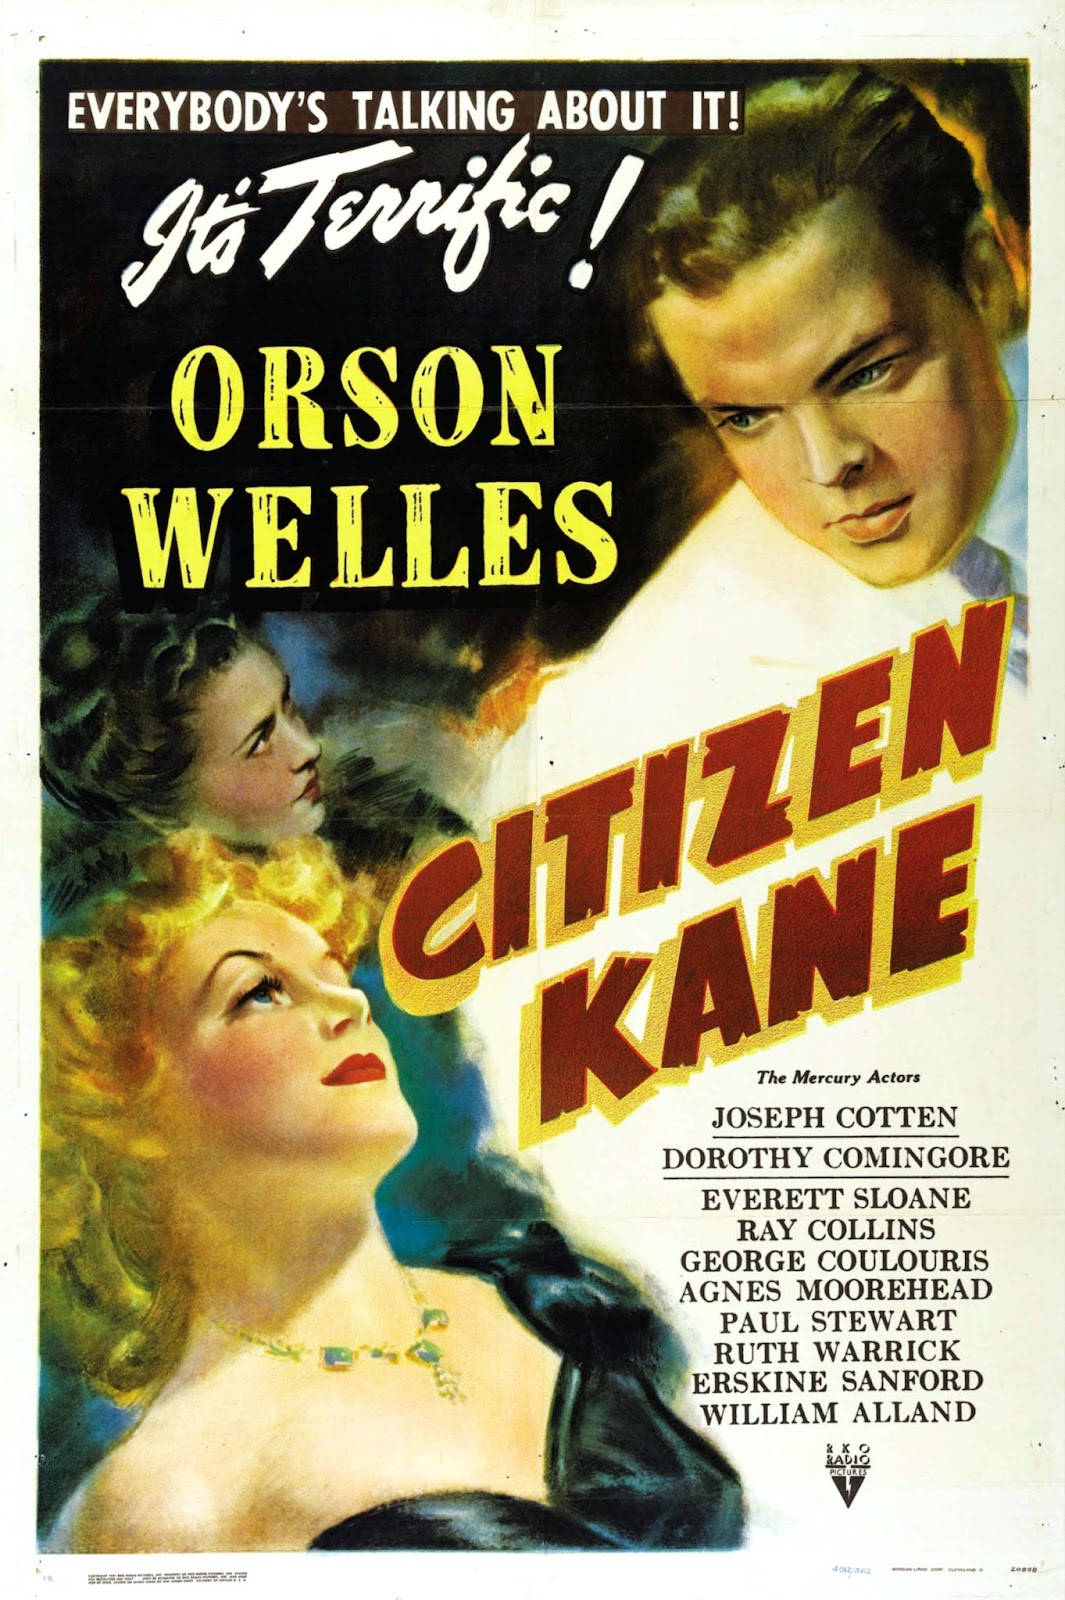 Citizen Kane, un autre classique du cinéma hollywoodien.